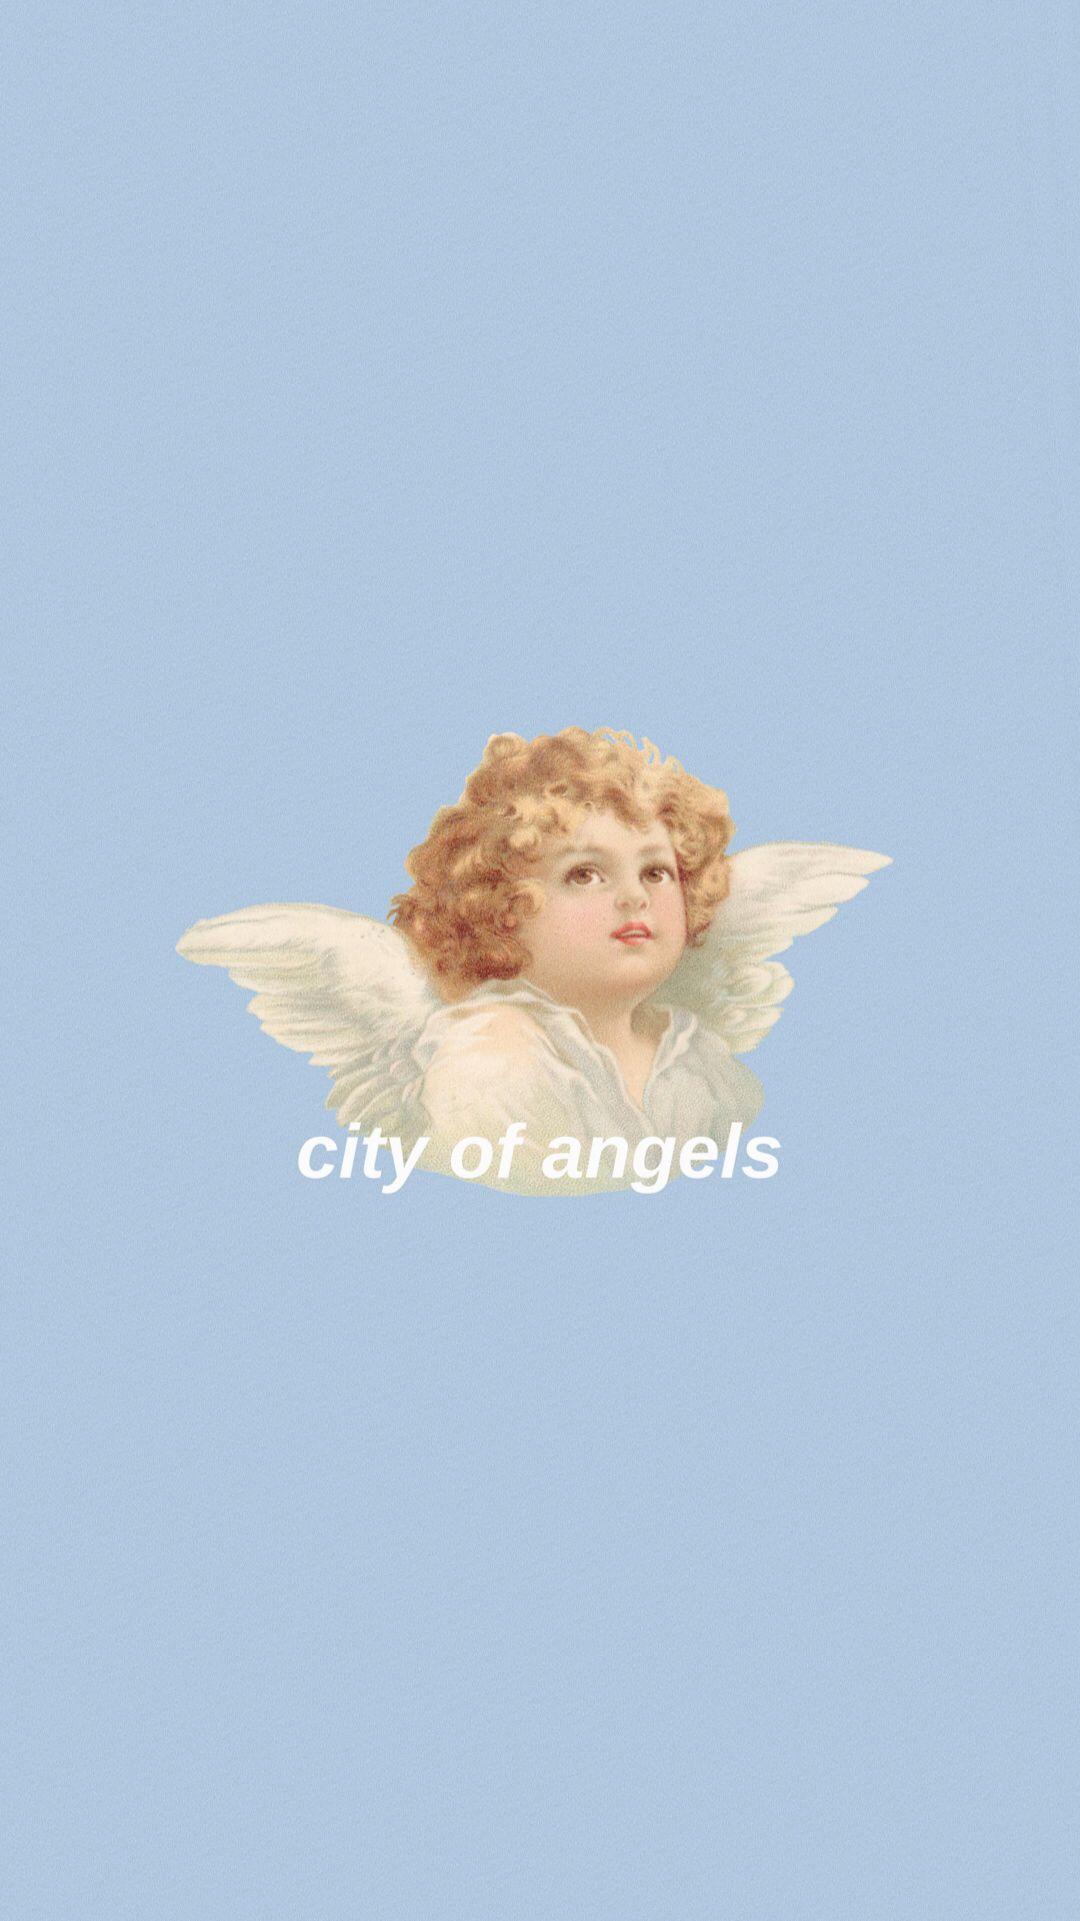 angelwings #angel #cherub #aesthetic #aesthetictumblr